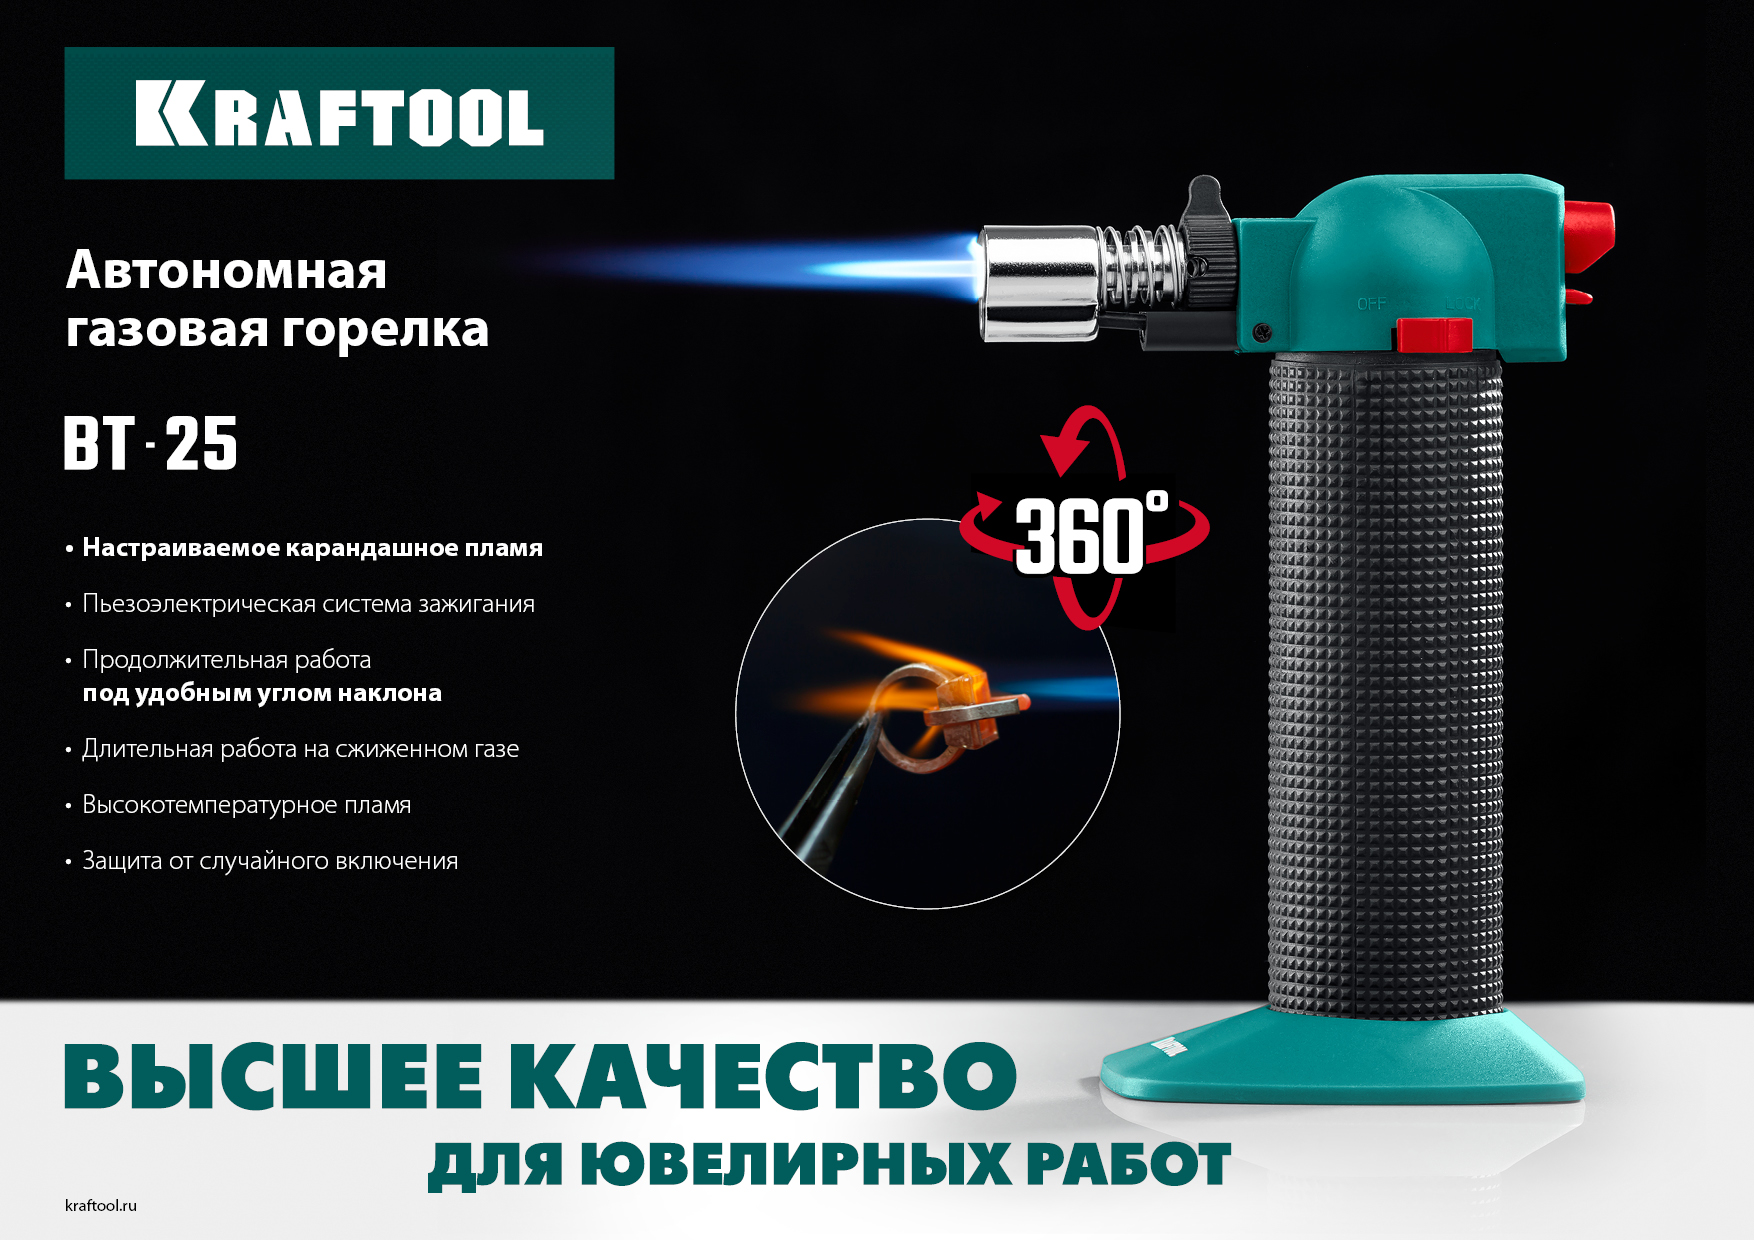 KRAFTOOL BT-25, 1100°С, автономная газовая горелка с пьезоподжигом (55507)